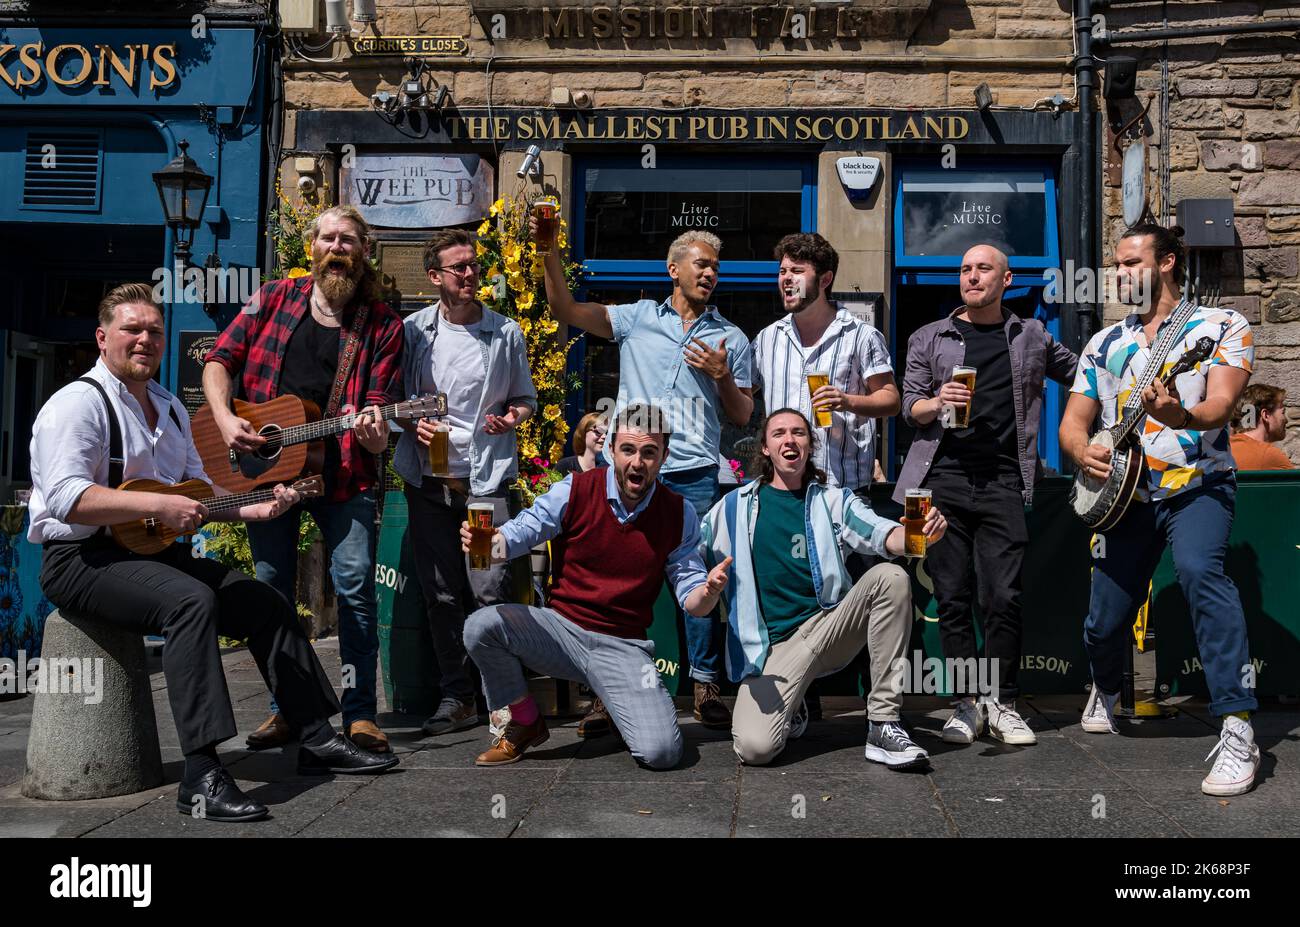 Chor der man-Gruppe singt, spielt Musik und trinkt Bier in der kleinsten Kneipe in Schottland, Grassmarket, Edinburgh, Schottland, Großbritannien Stockfoto